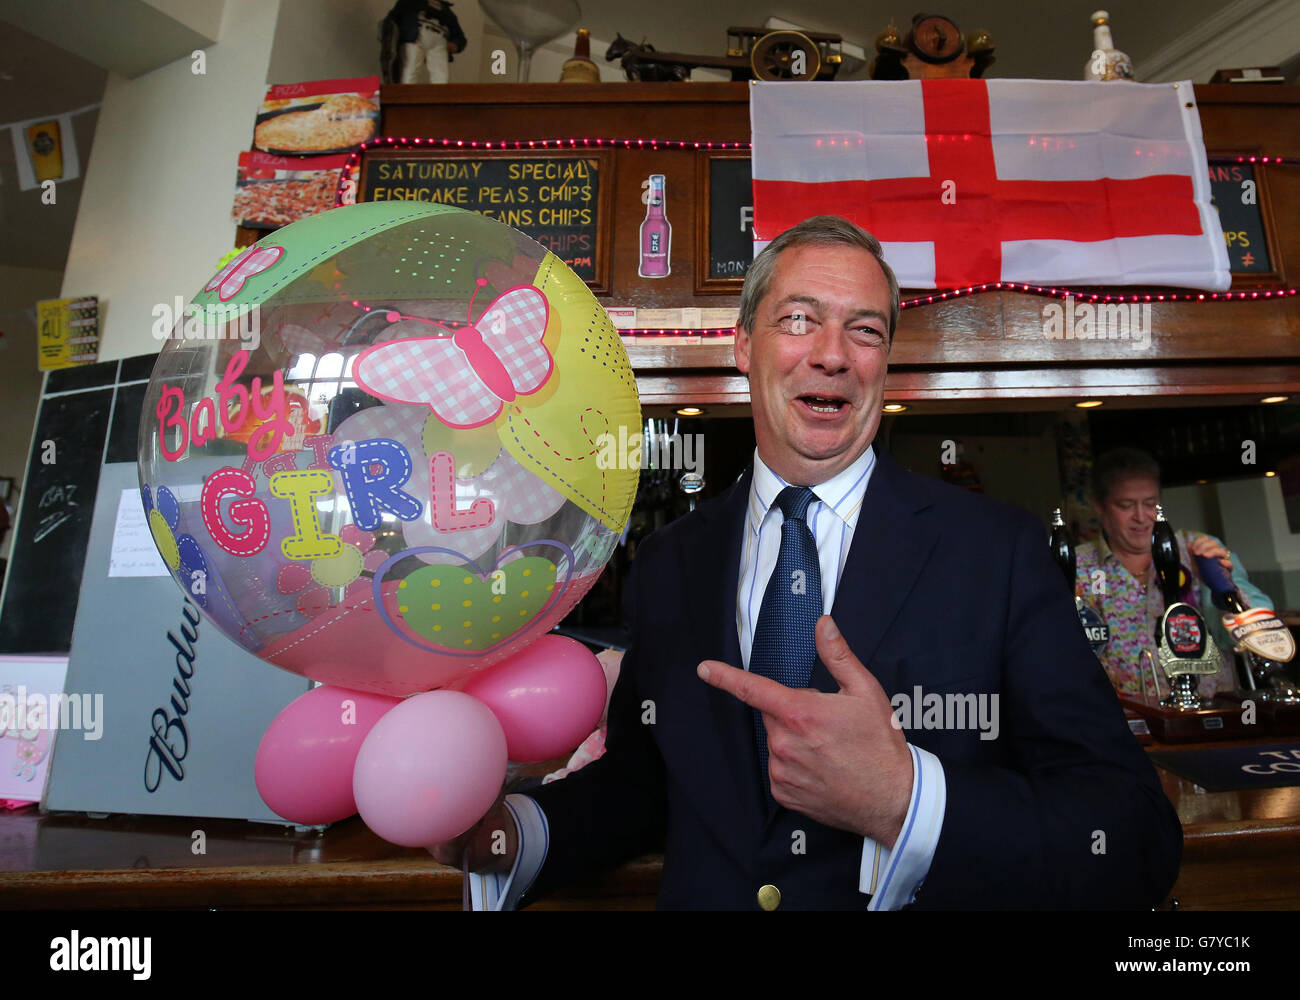 El líder del UKIP, Nigel Farage, aferna la llegada del bebé real a una casa pública en Ramsgate, Kent, durante un día de campaña para la sede del Thanet Sur en las próximas elecciones generales. Foto de stock